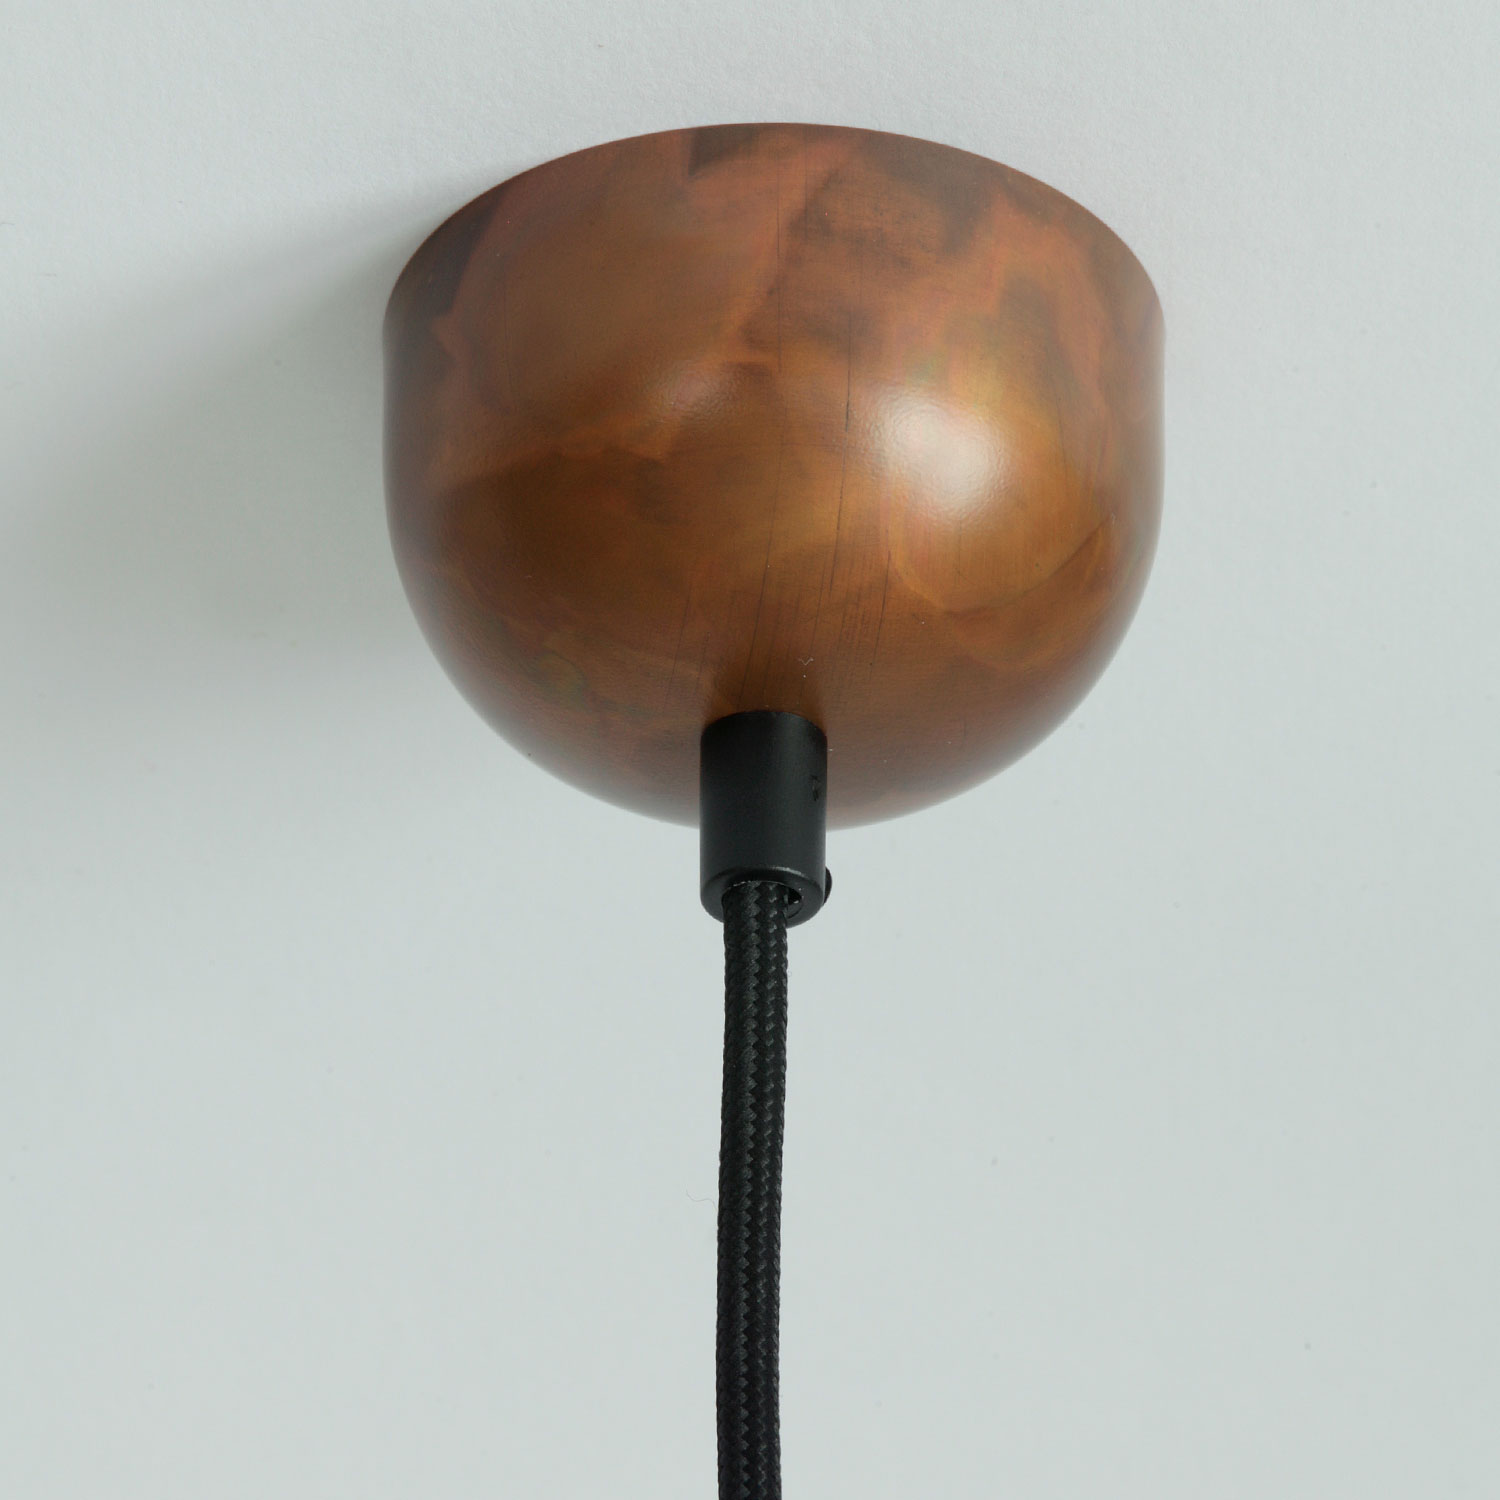 BREMEN Kupfer-Hängeleuchte mit Zylinderglas: Kupfer geflammt, matt lackiert, schwarzes Textilkabel